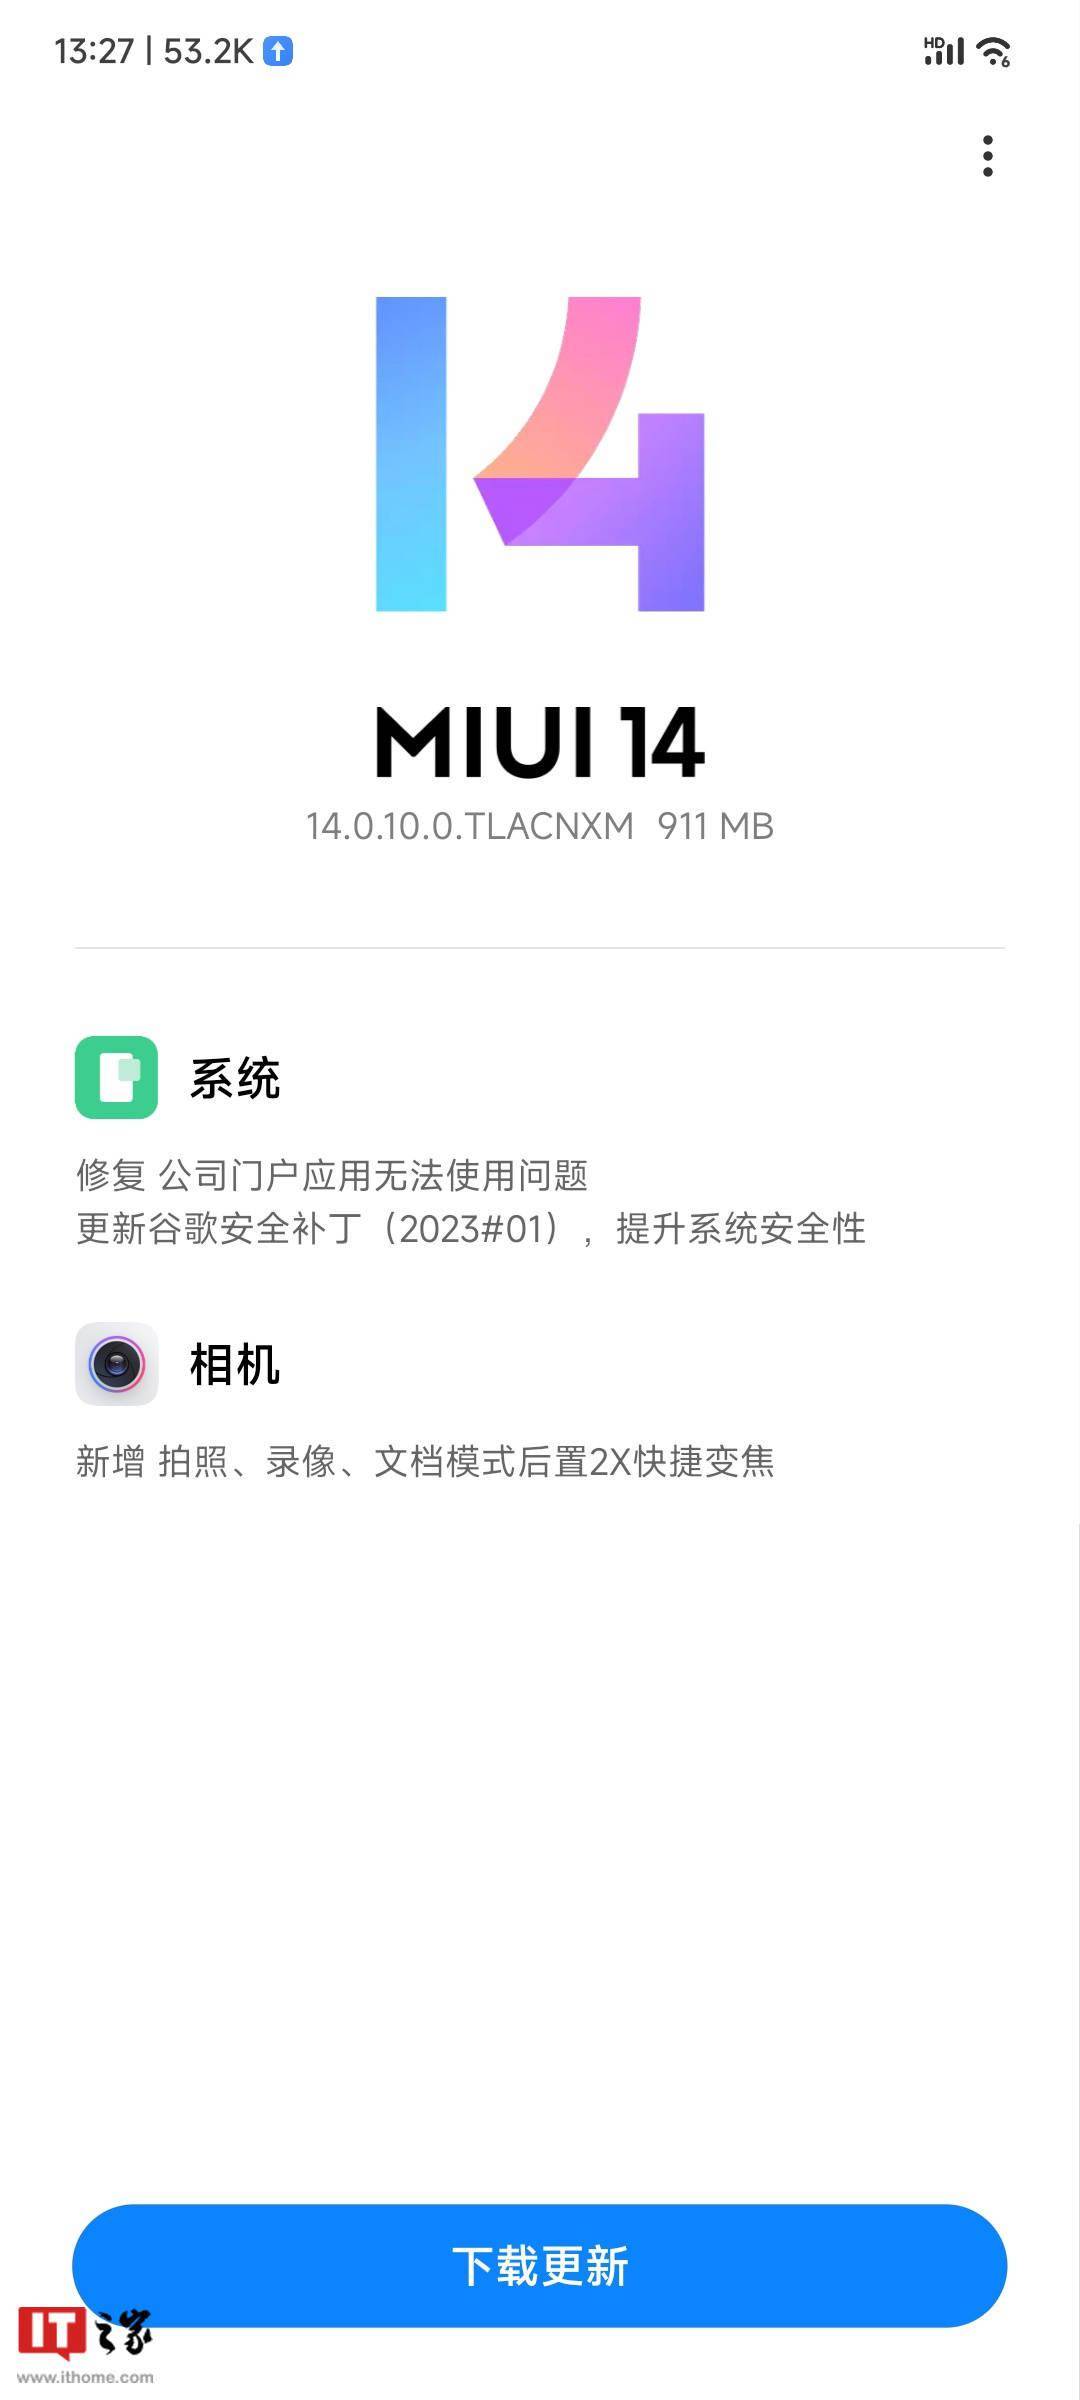 小米 12S Ultra 推送 MIUI 14 新版本 14.0.10.0.TLACNXM